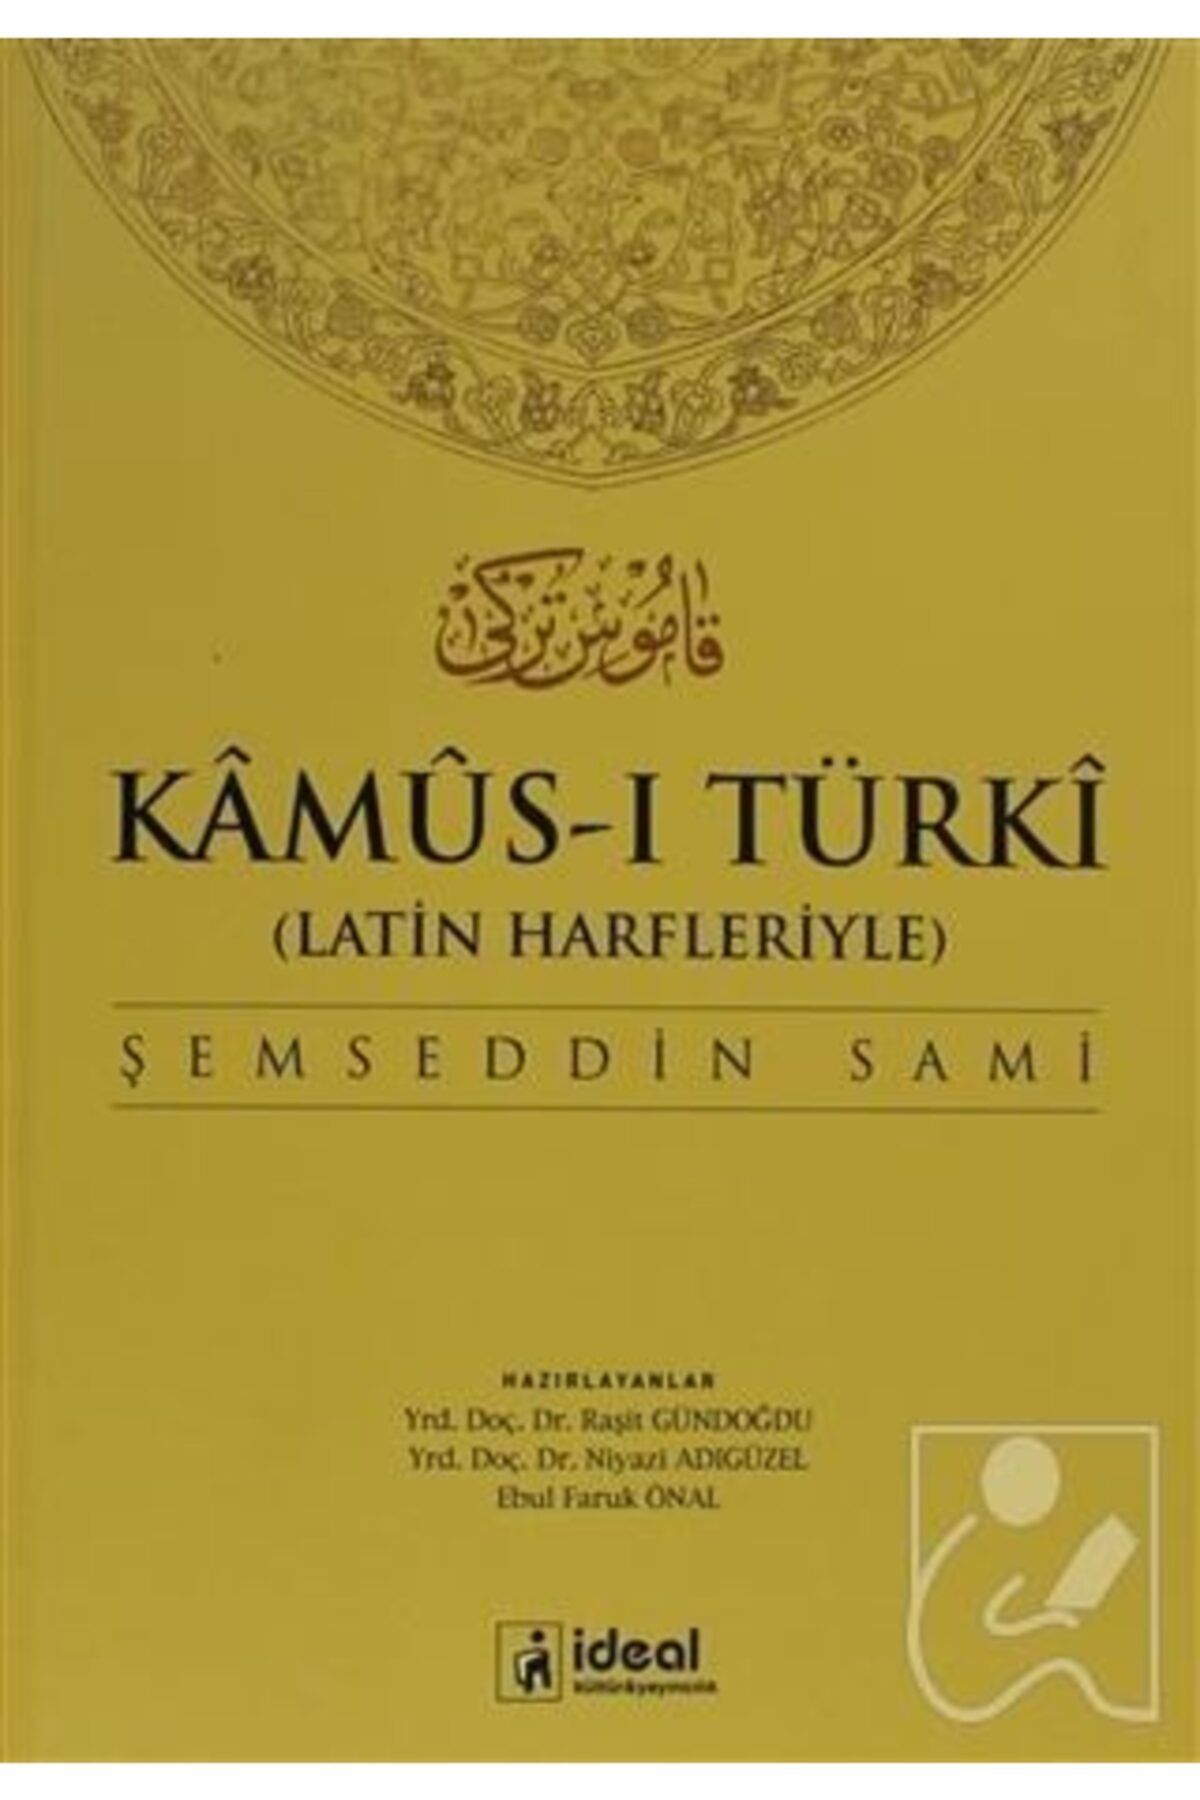 İdeal Kültür Yayıncılık Latin Harfleriyle Kamus-i Türki (Osmanlıca-Türkçe Sözlük) - Şemseddin Sami 9786055729219